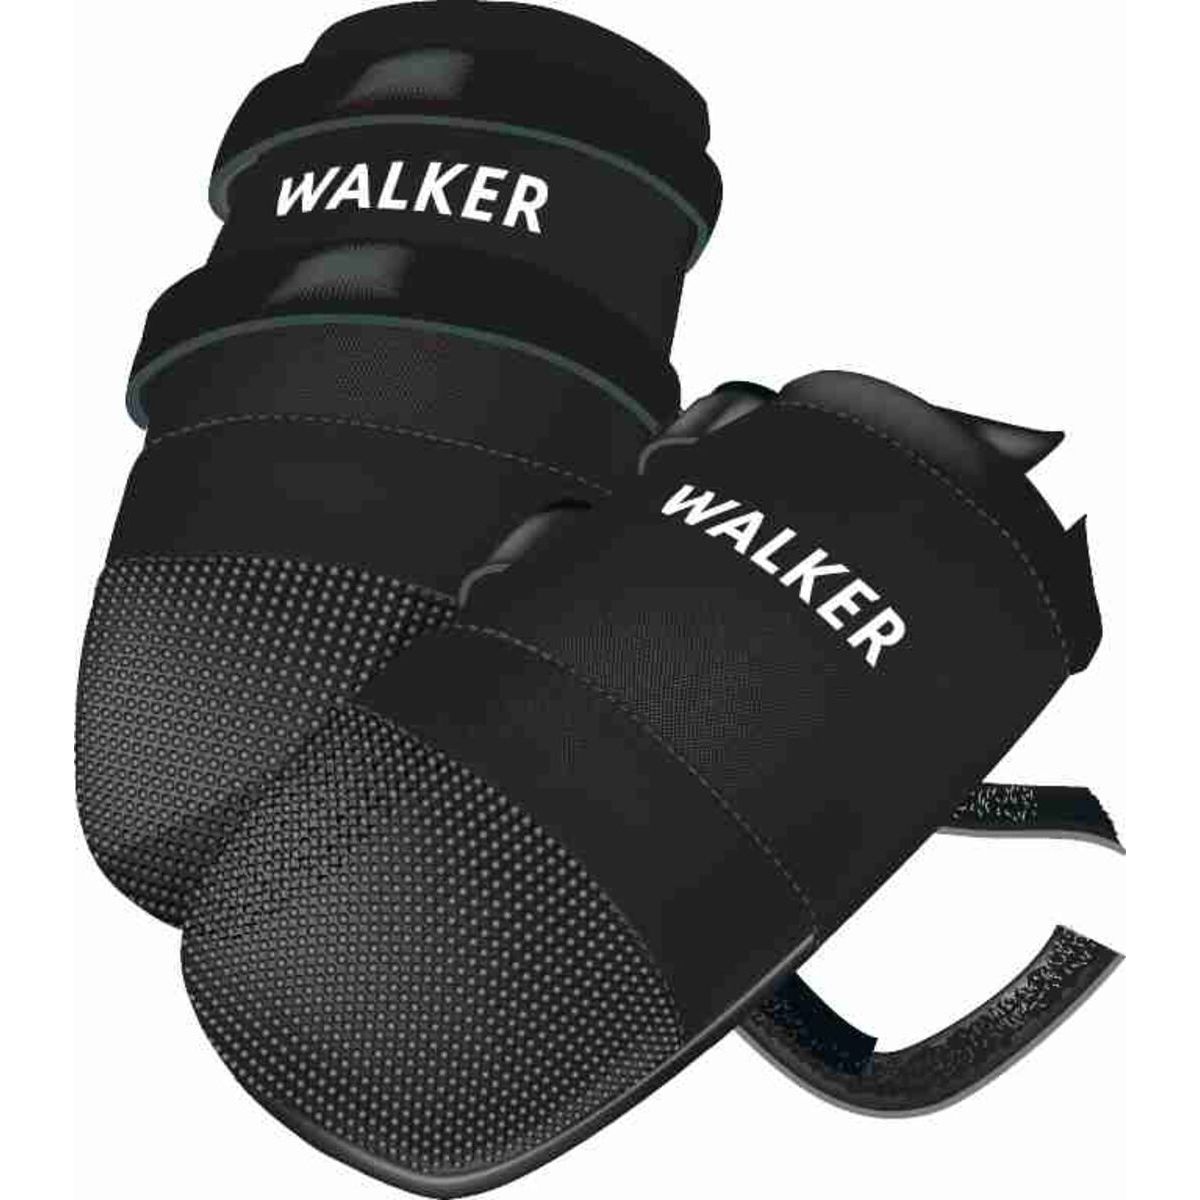 Ботинки для собак Trixie Walker Care полиэстер, XXXL, 2 шт., черные - фото 2